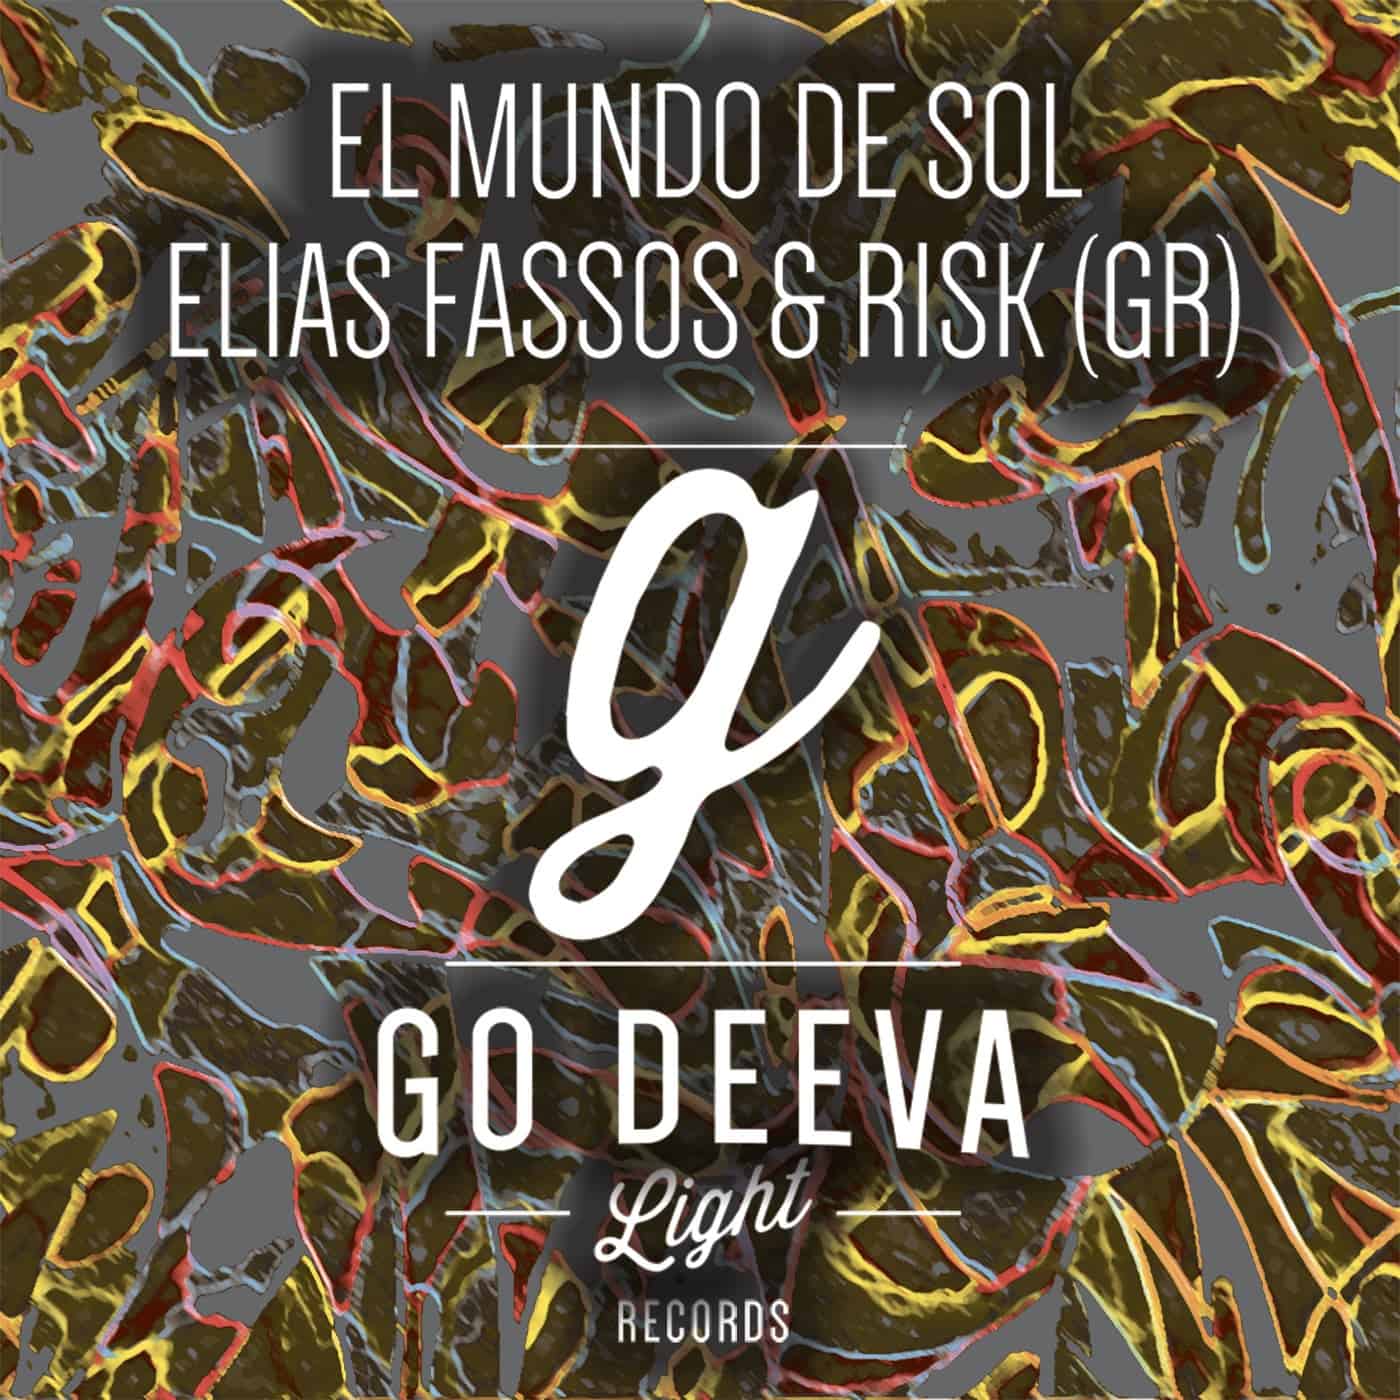 Download Elias Fassos, RisK (Gr) - El Mundo De Sol on Electrobuzz